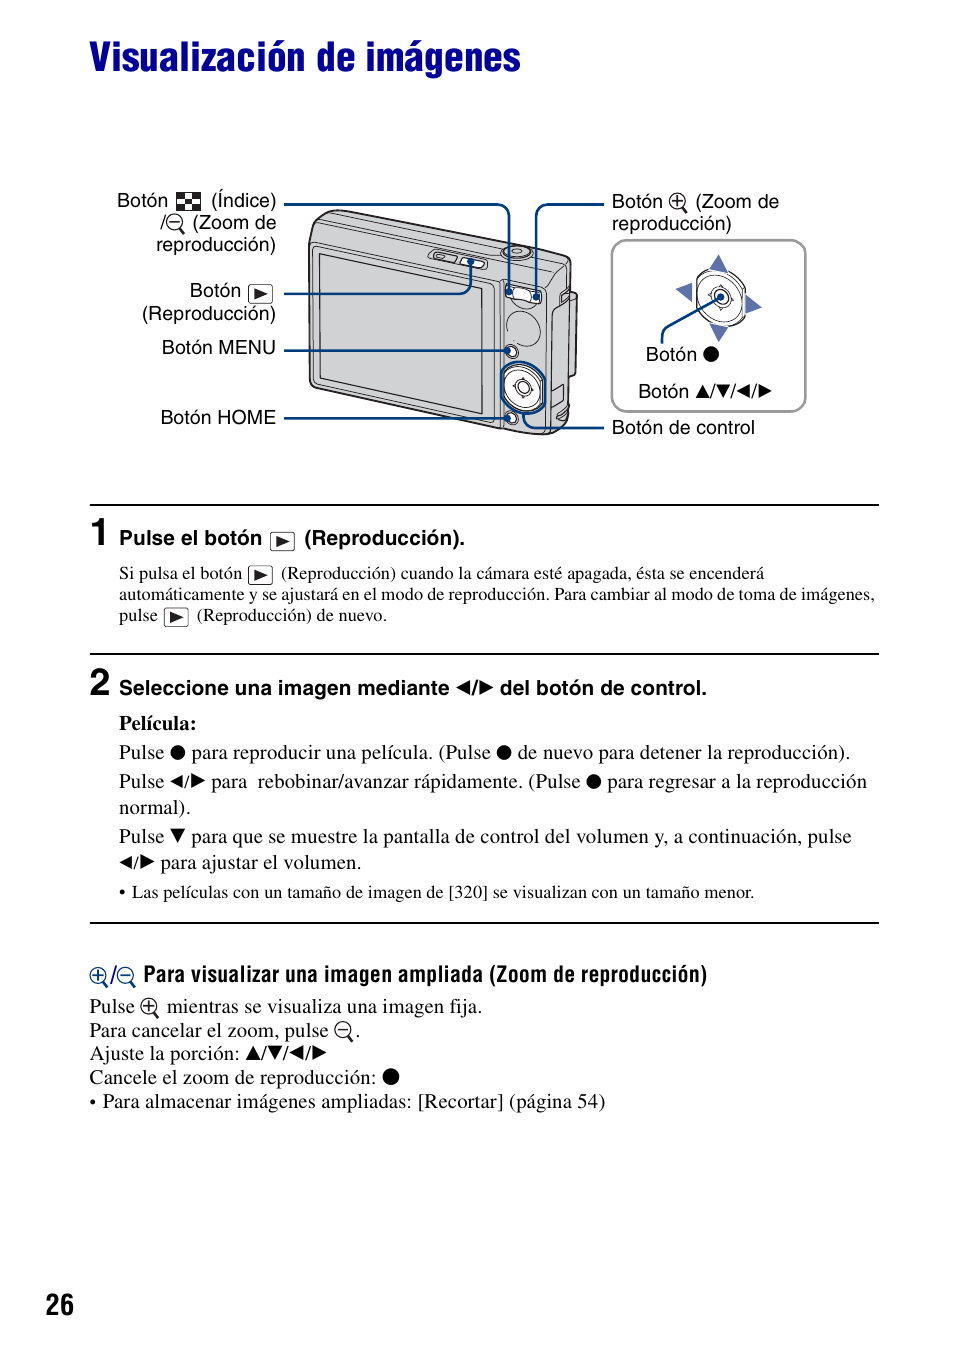 Visualización de imágenes, N) (26) | Sony DSC-T100 Manual del usuario | Página 26 / 123